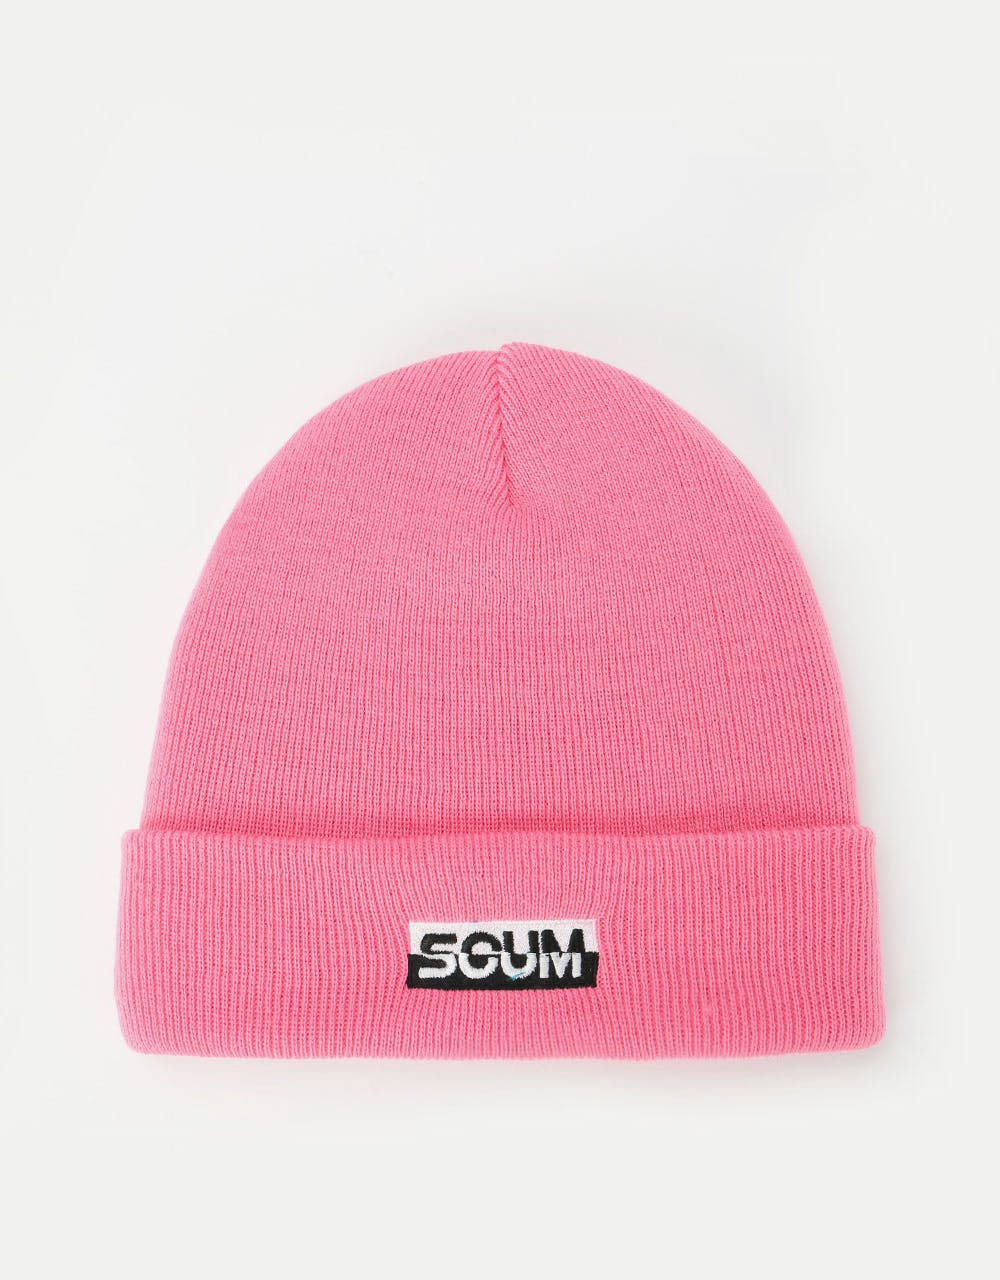 Scum Logo Beanie - Pink